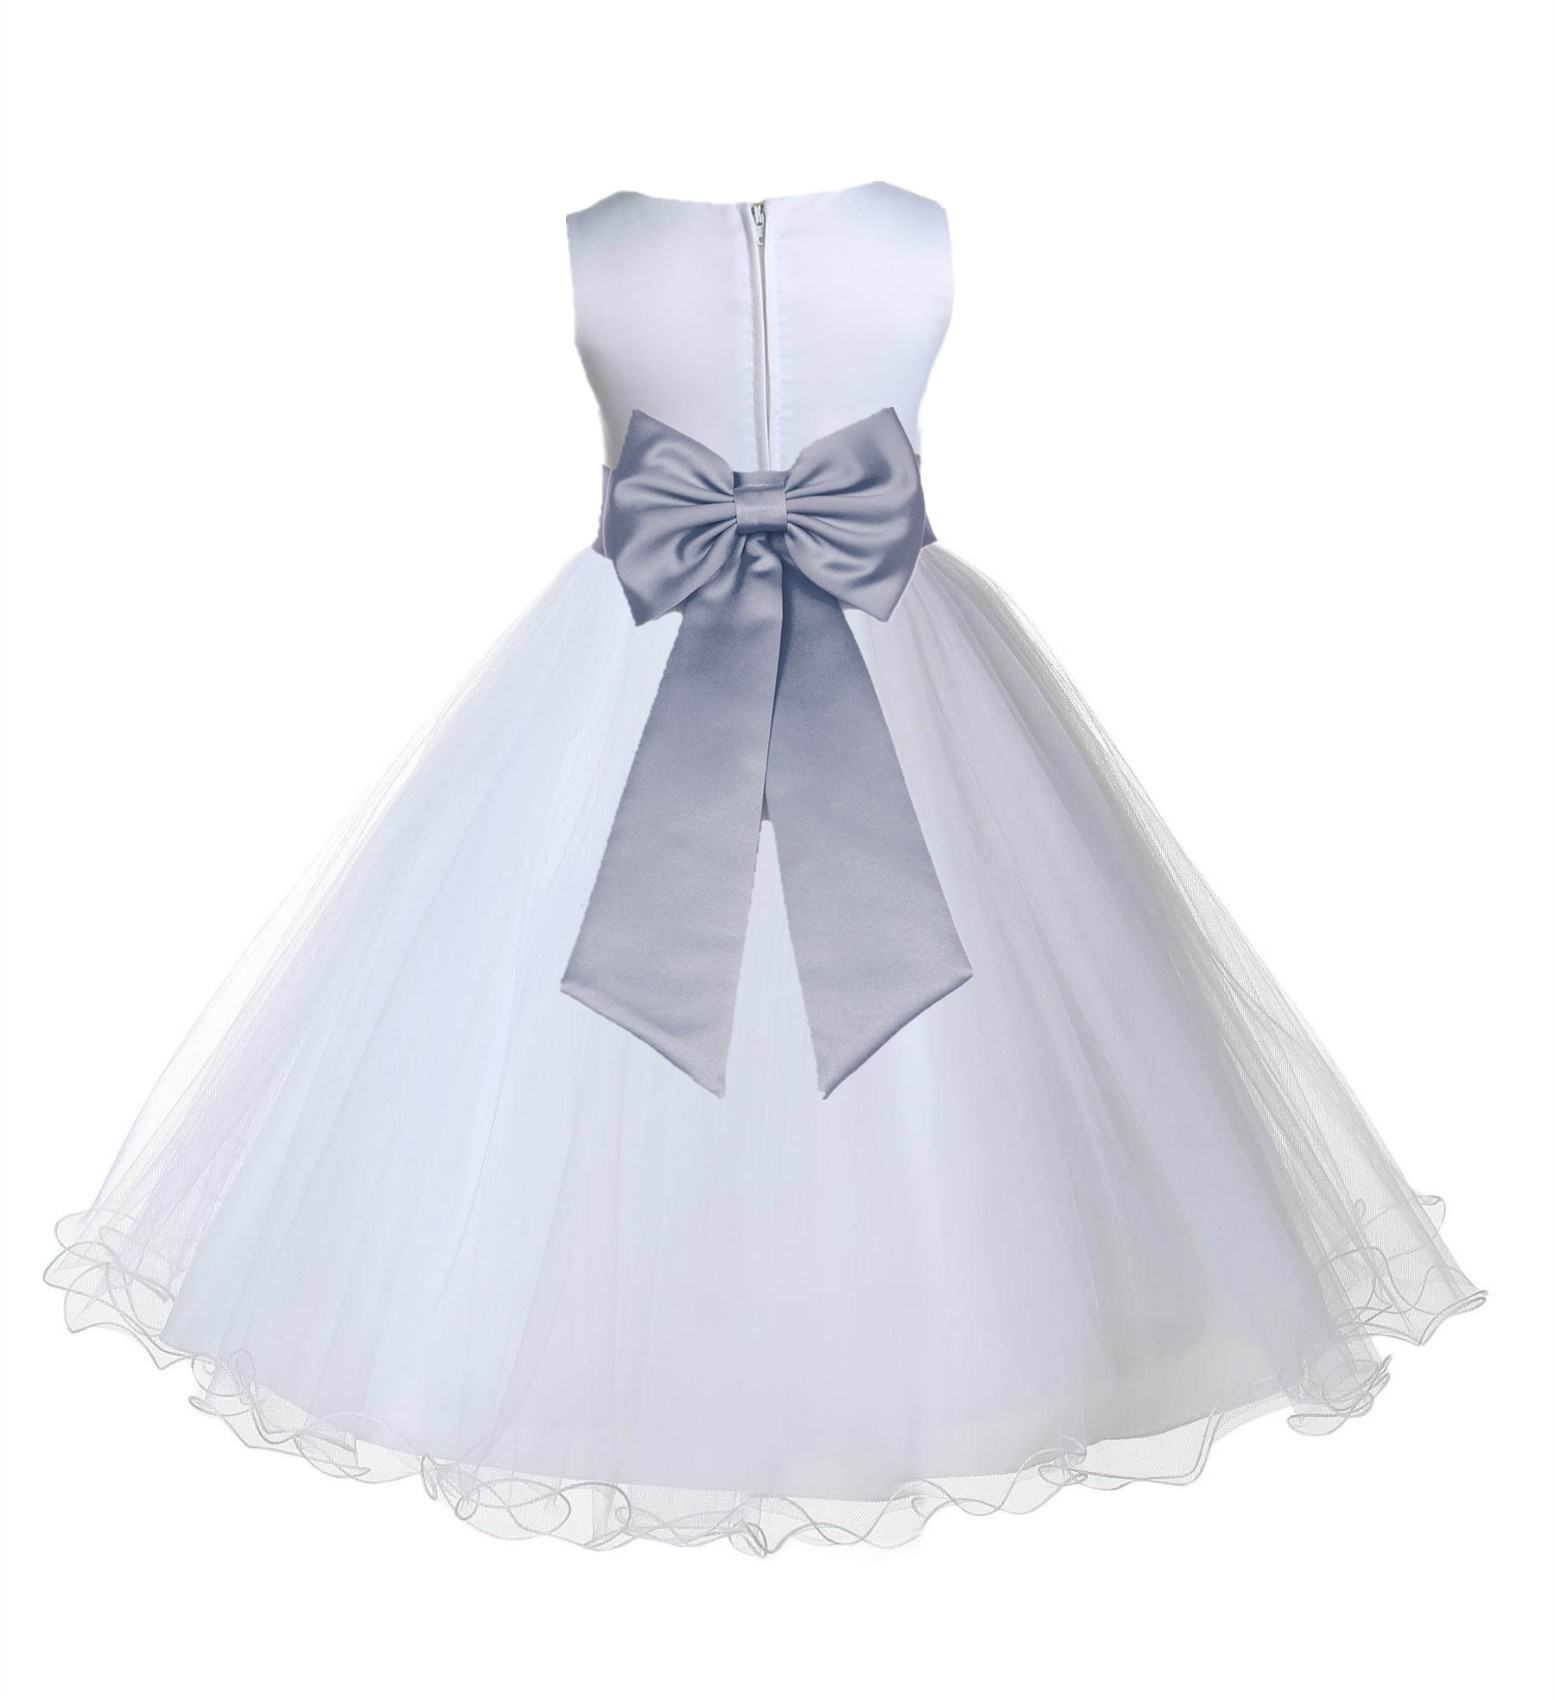 White / Fog Tulle Rattail Edge Flower Girl Dress Wedding Bridesmaid 829T